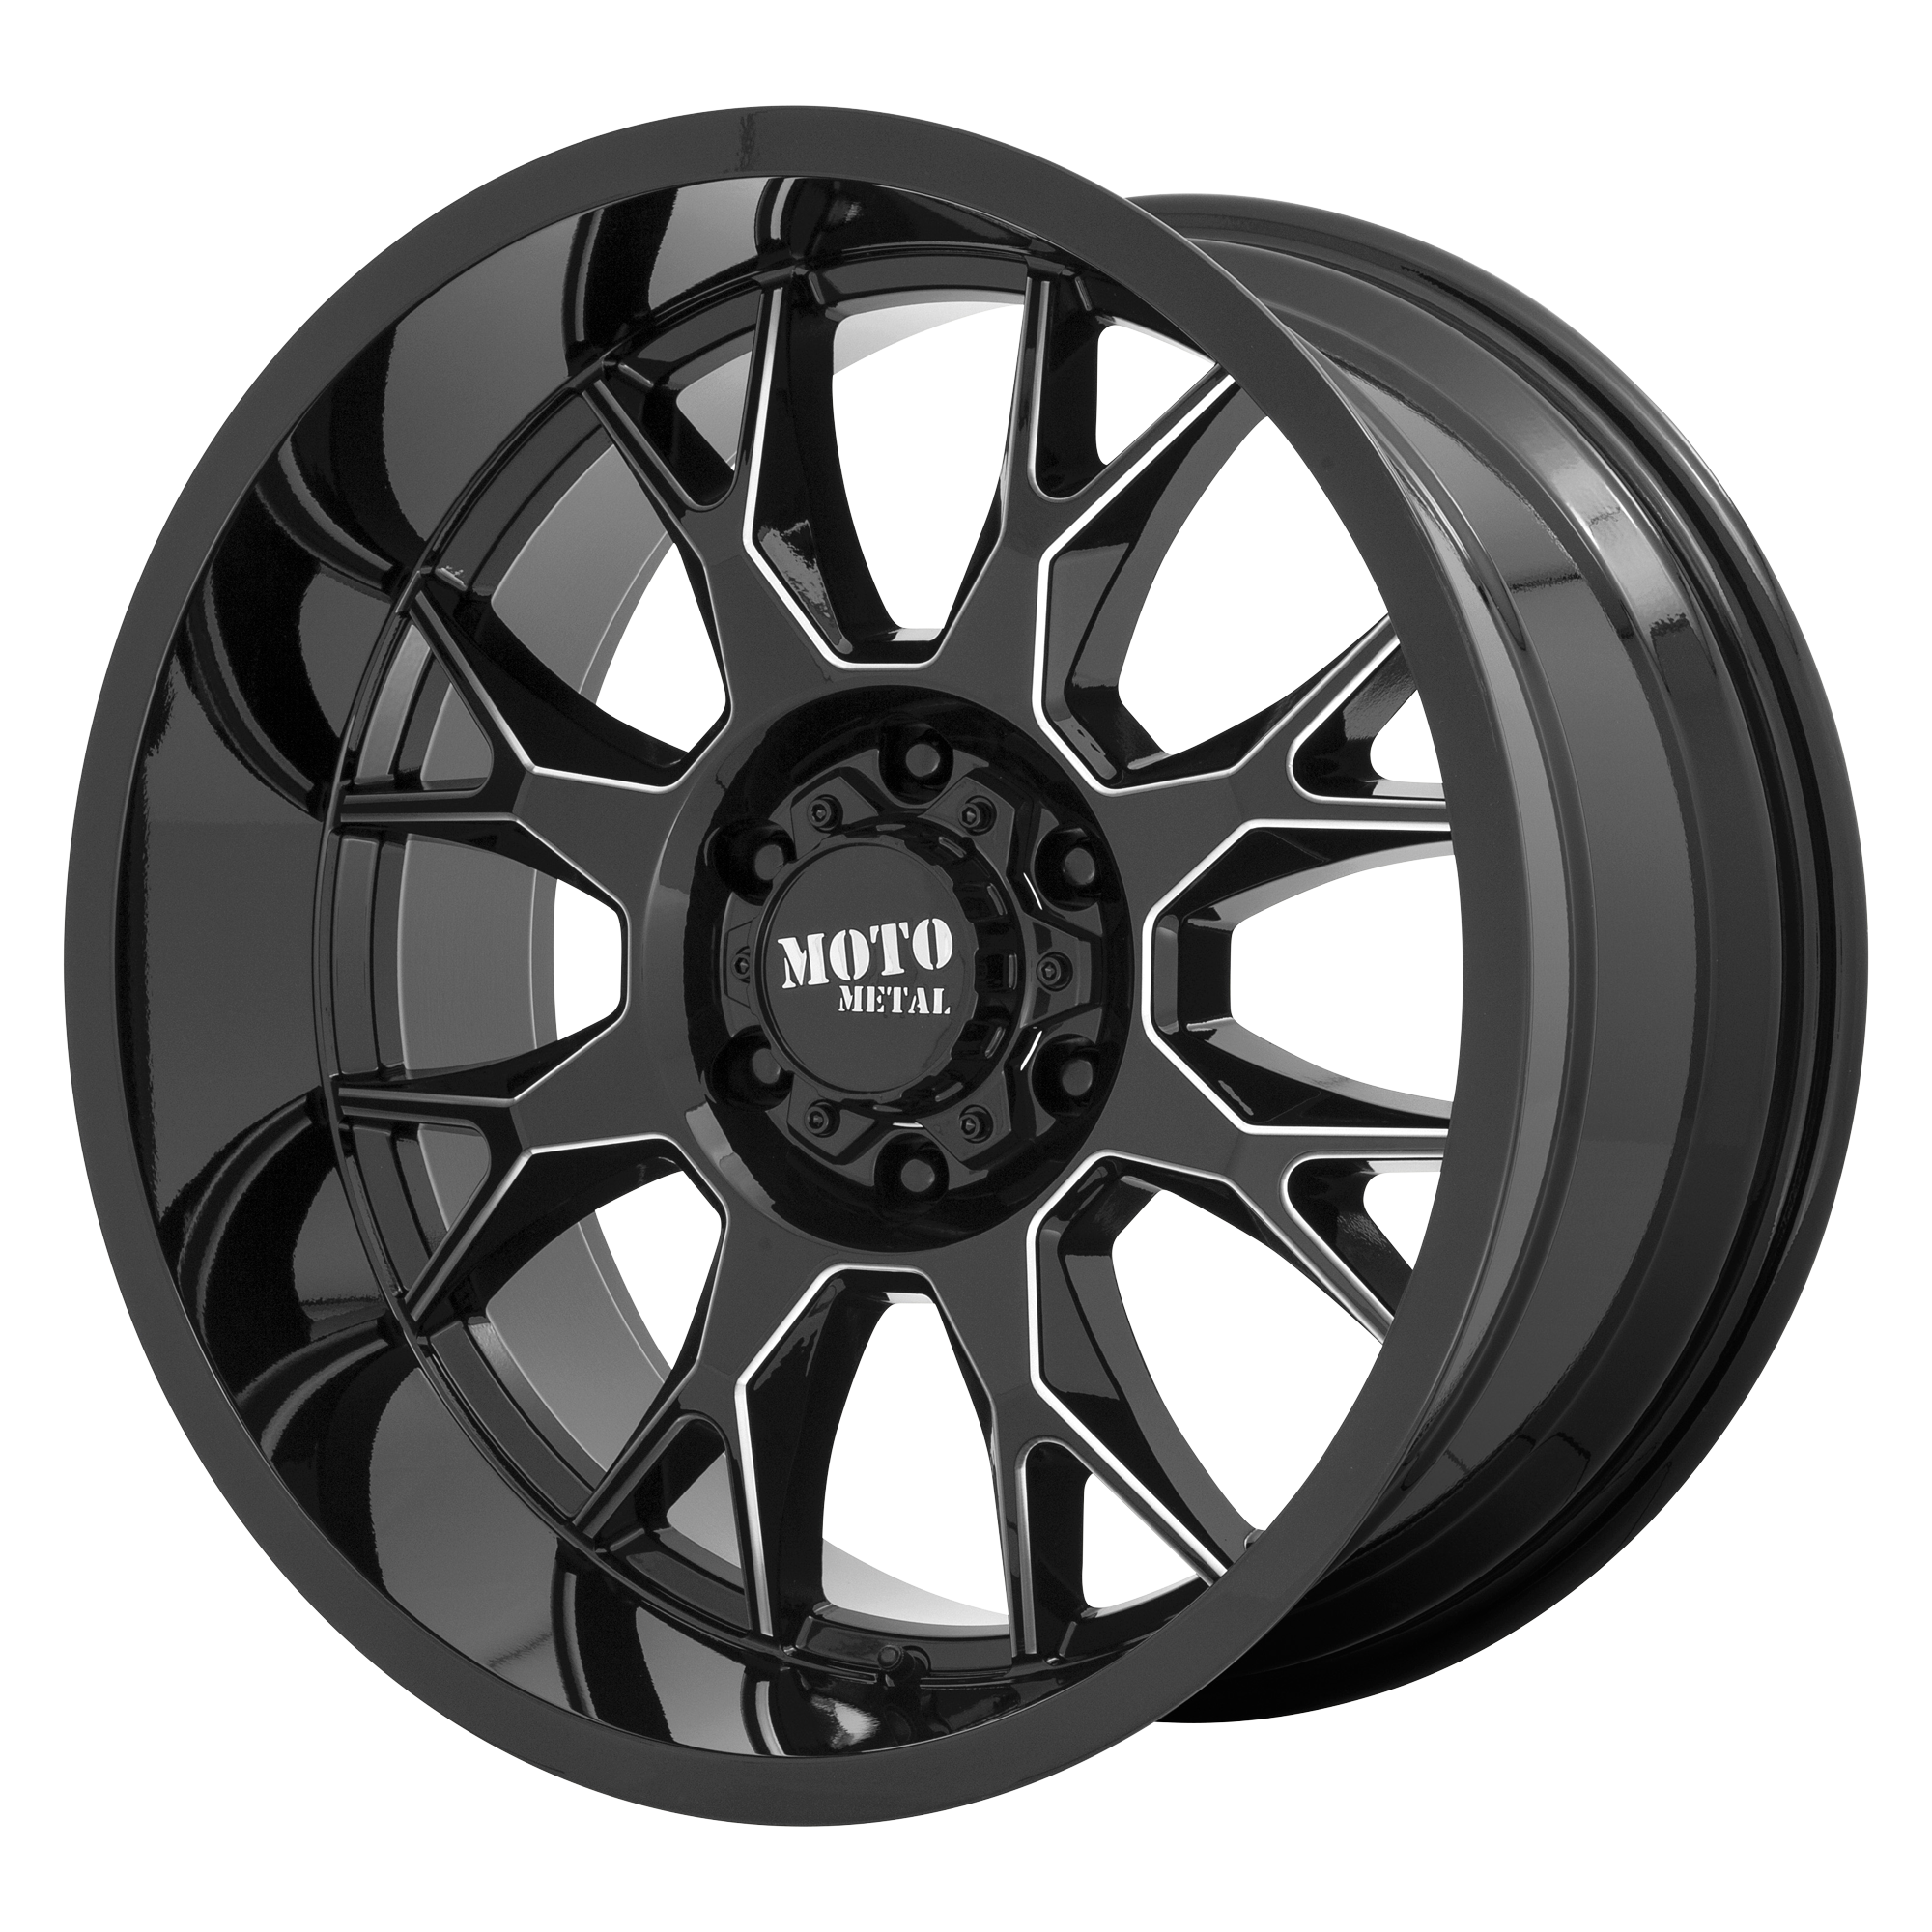 Moto Metal 20"x10" Non-Chrome Gloss Black Milled Custom Wheel ARSWCWMO80621050318N